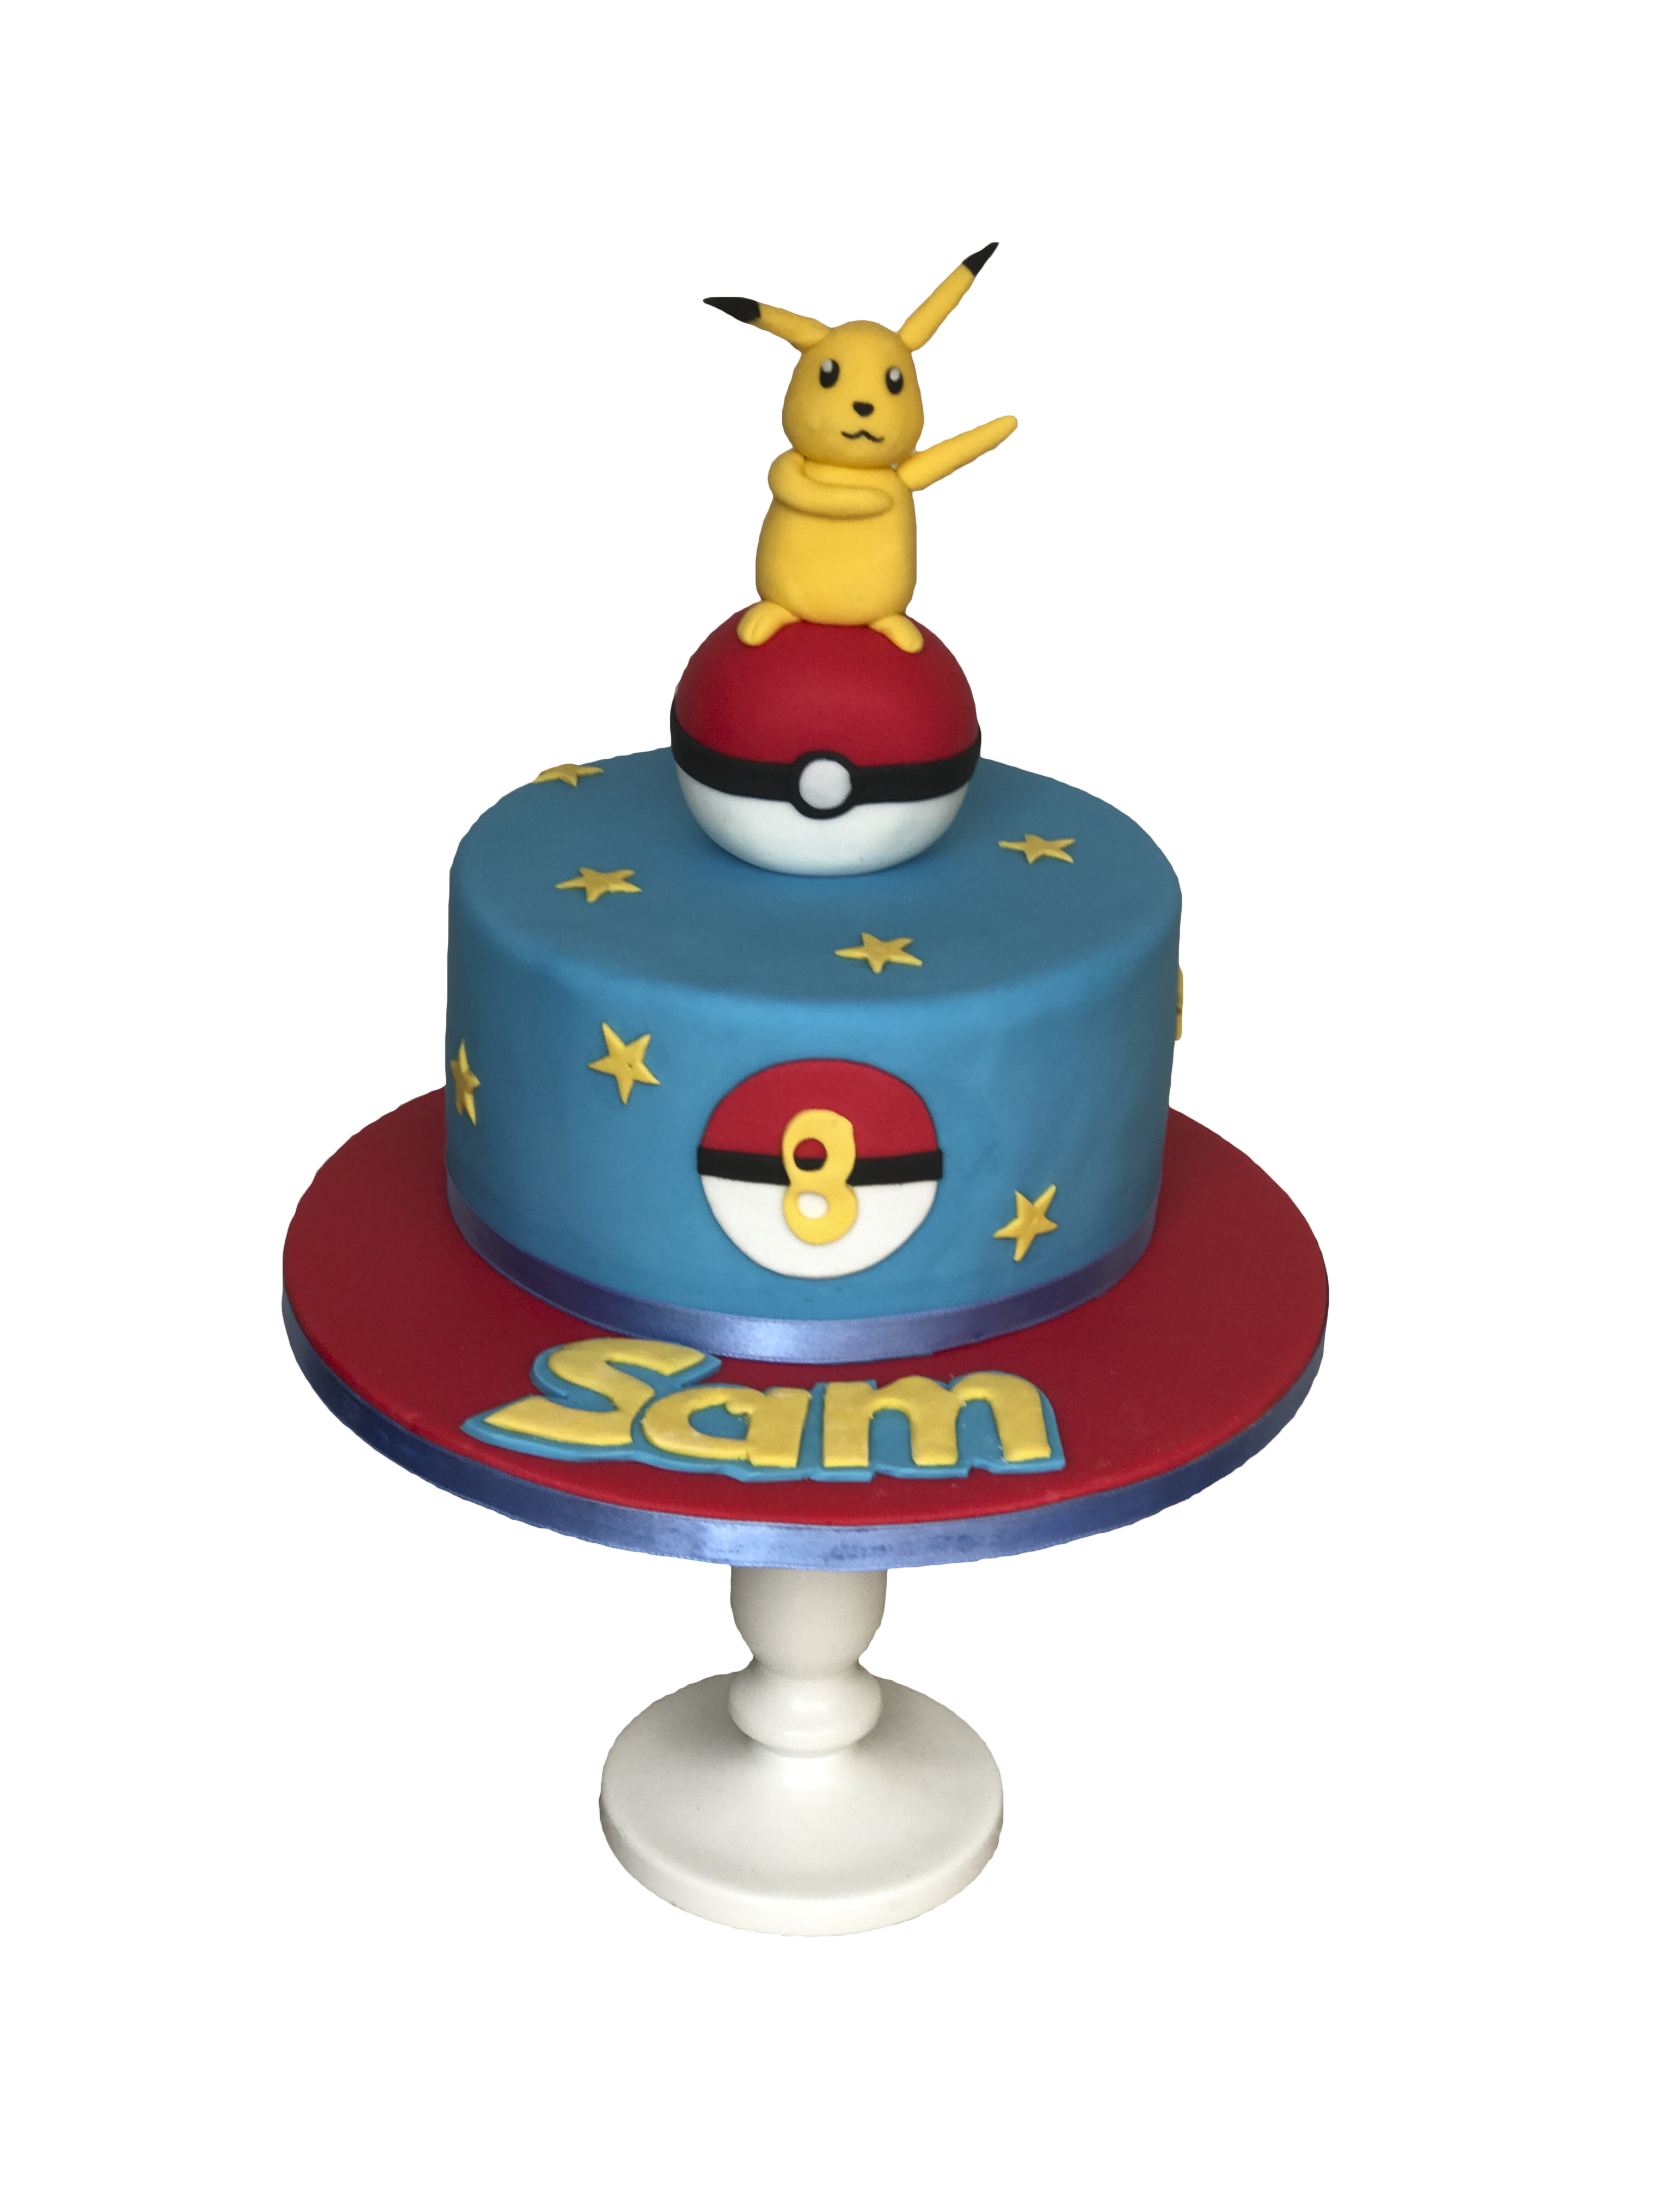 Pikachu Cake! - Coco Cake Land - Cake Tutorials, Cake Recipes, Cake